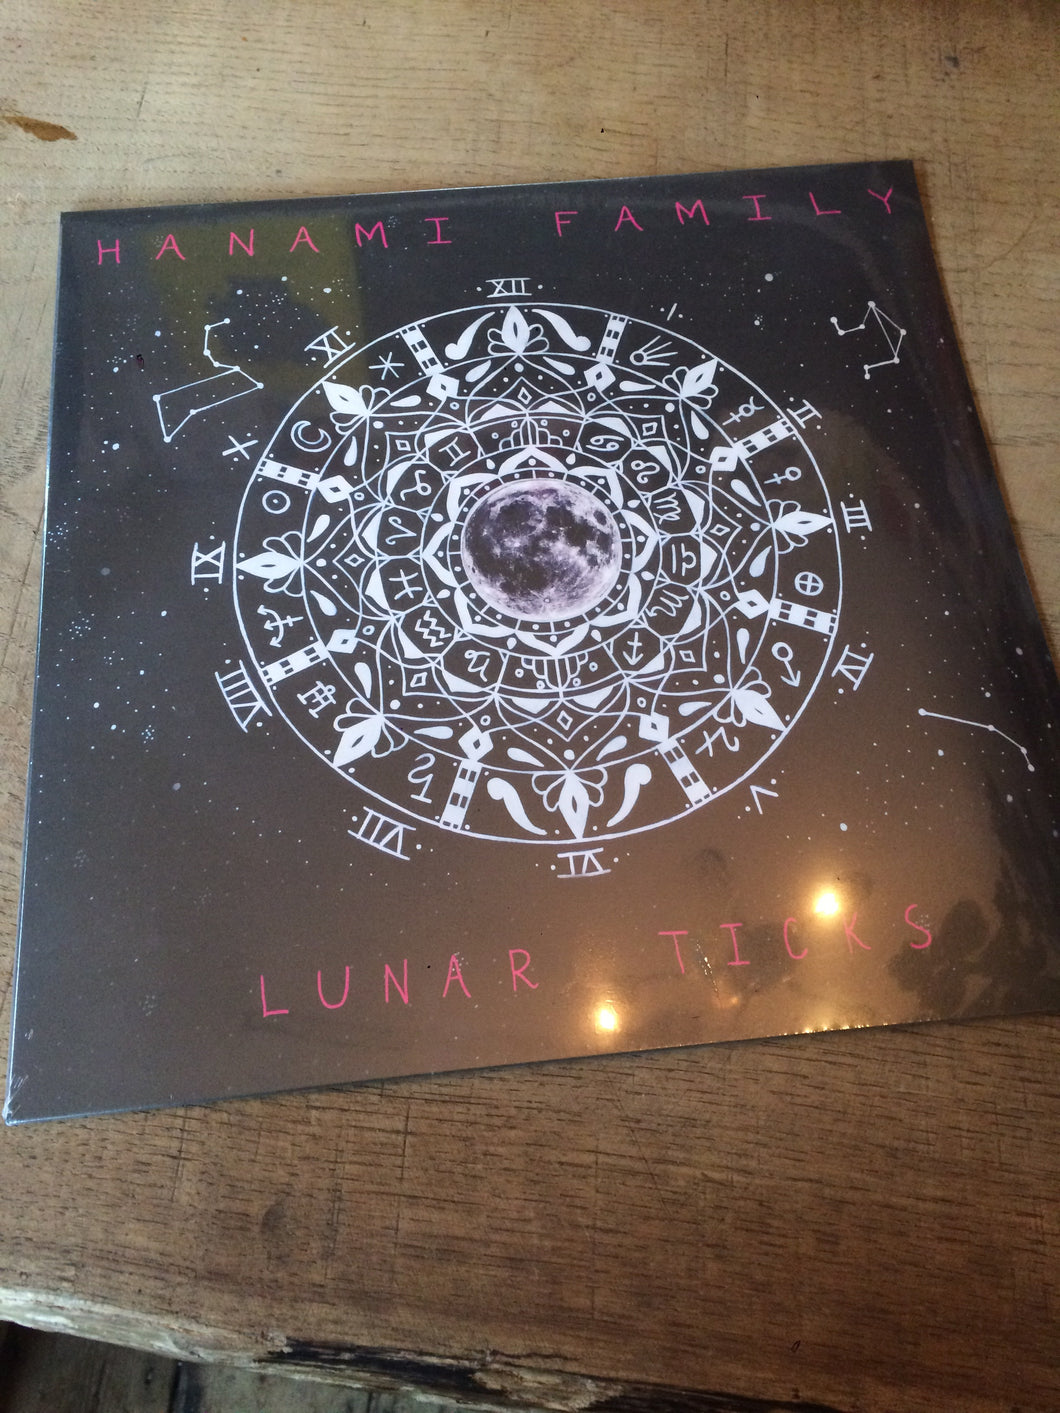 Hanami - Lunar Ticks